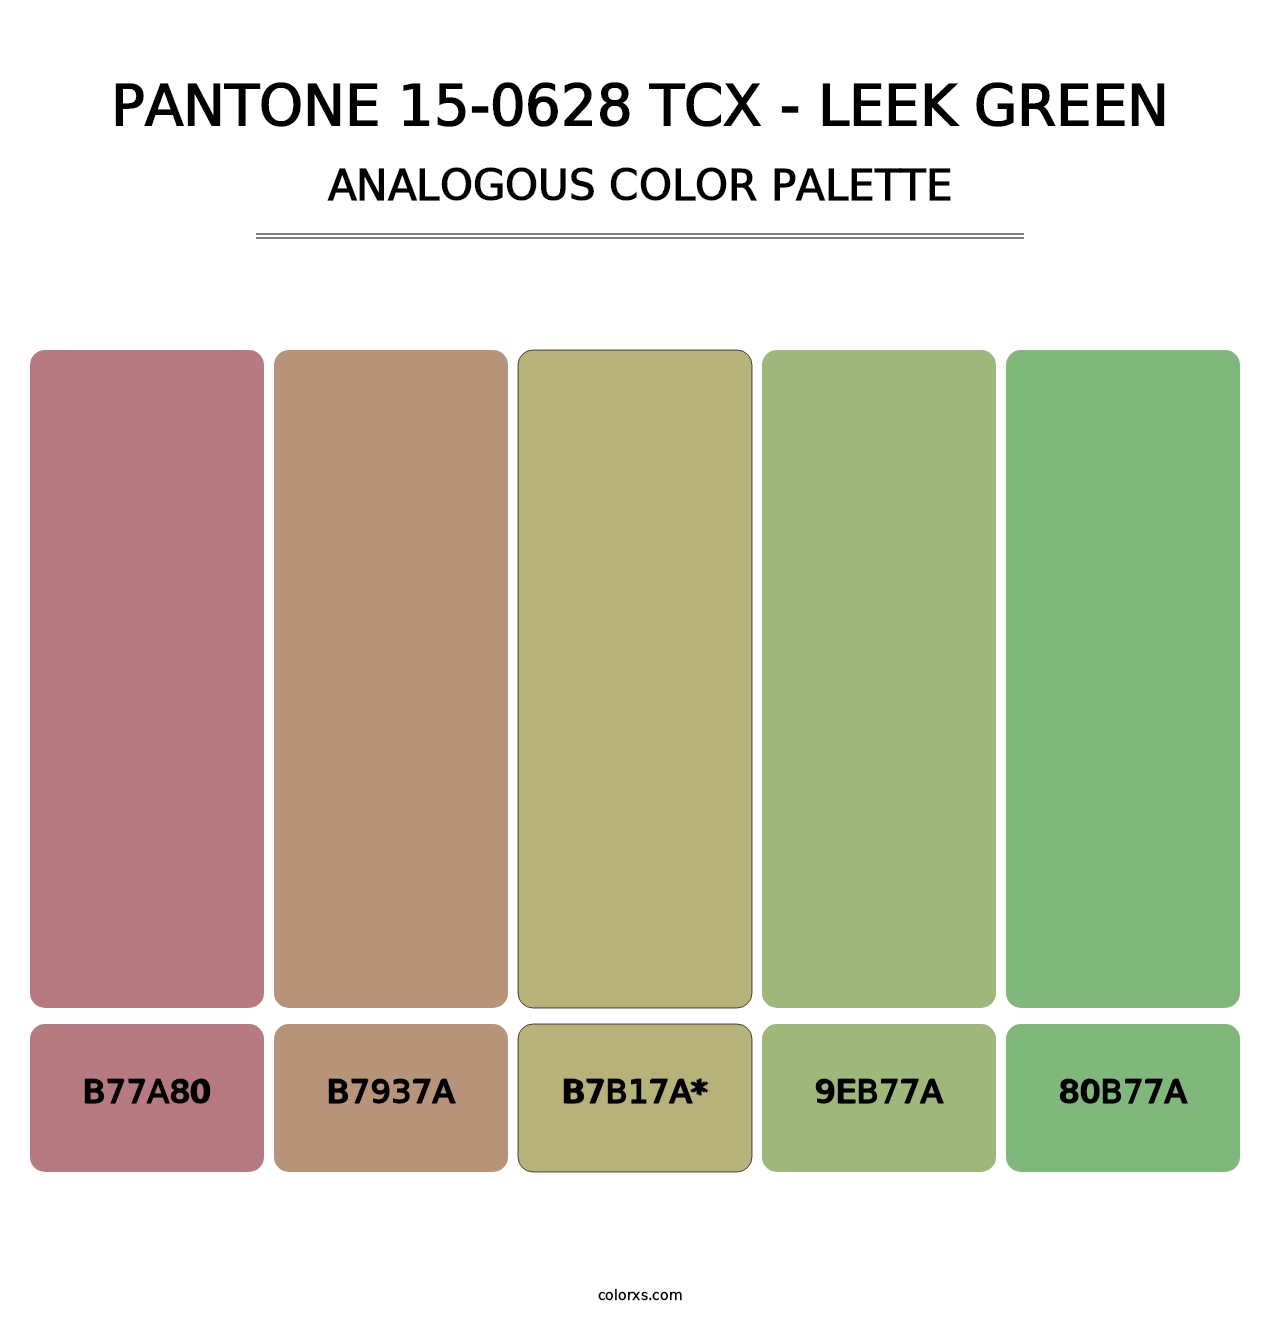 PANTONE 15-0628 TCX - Leek Green - Analogous Color Palette